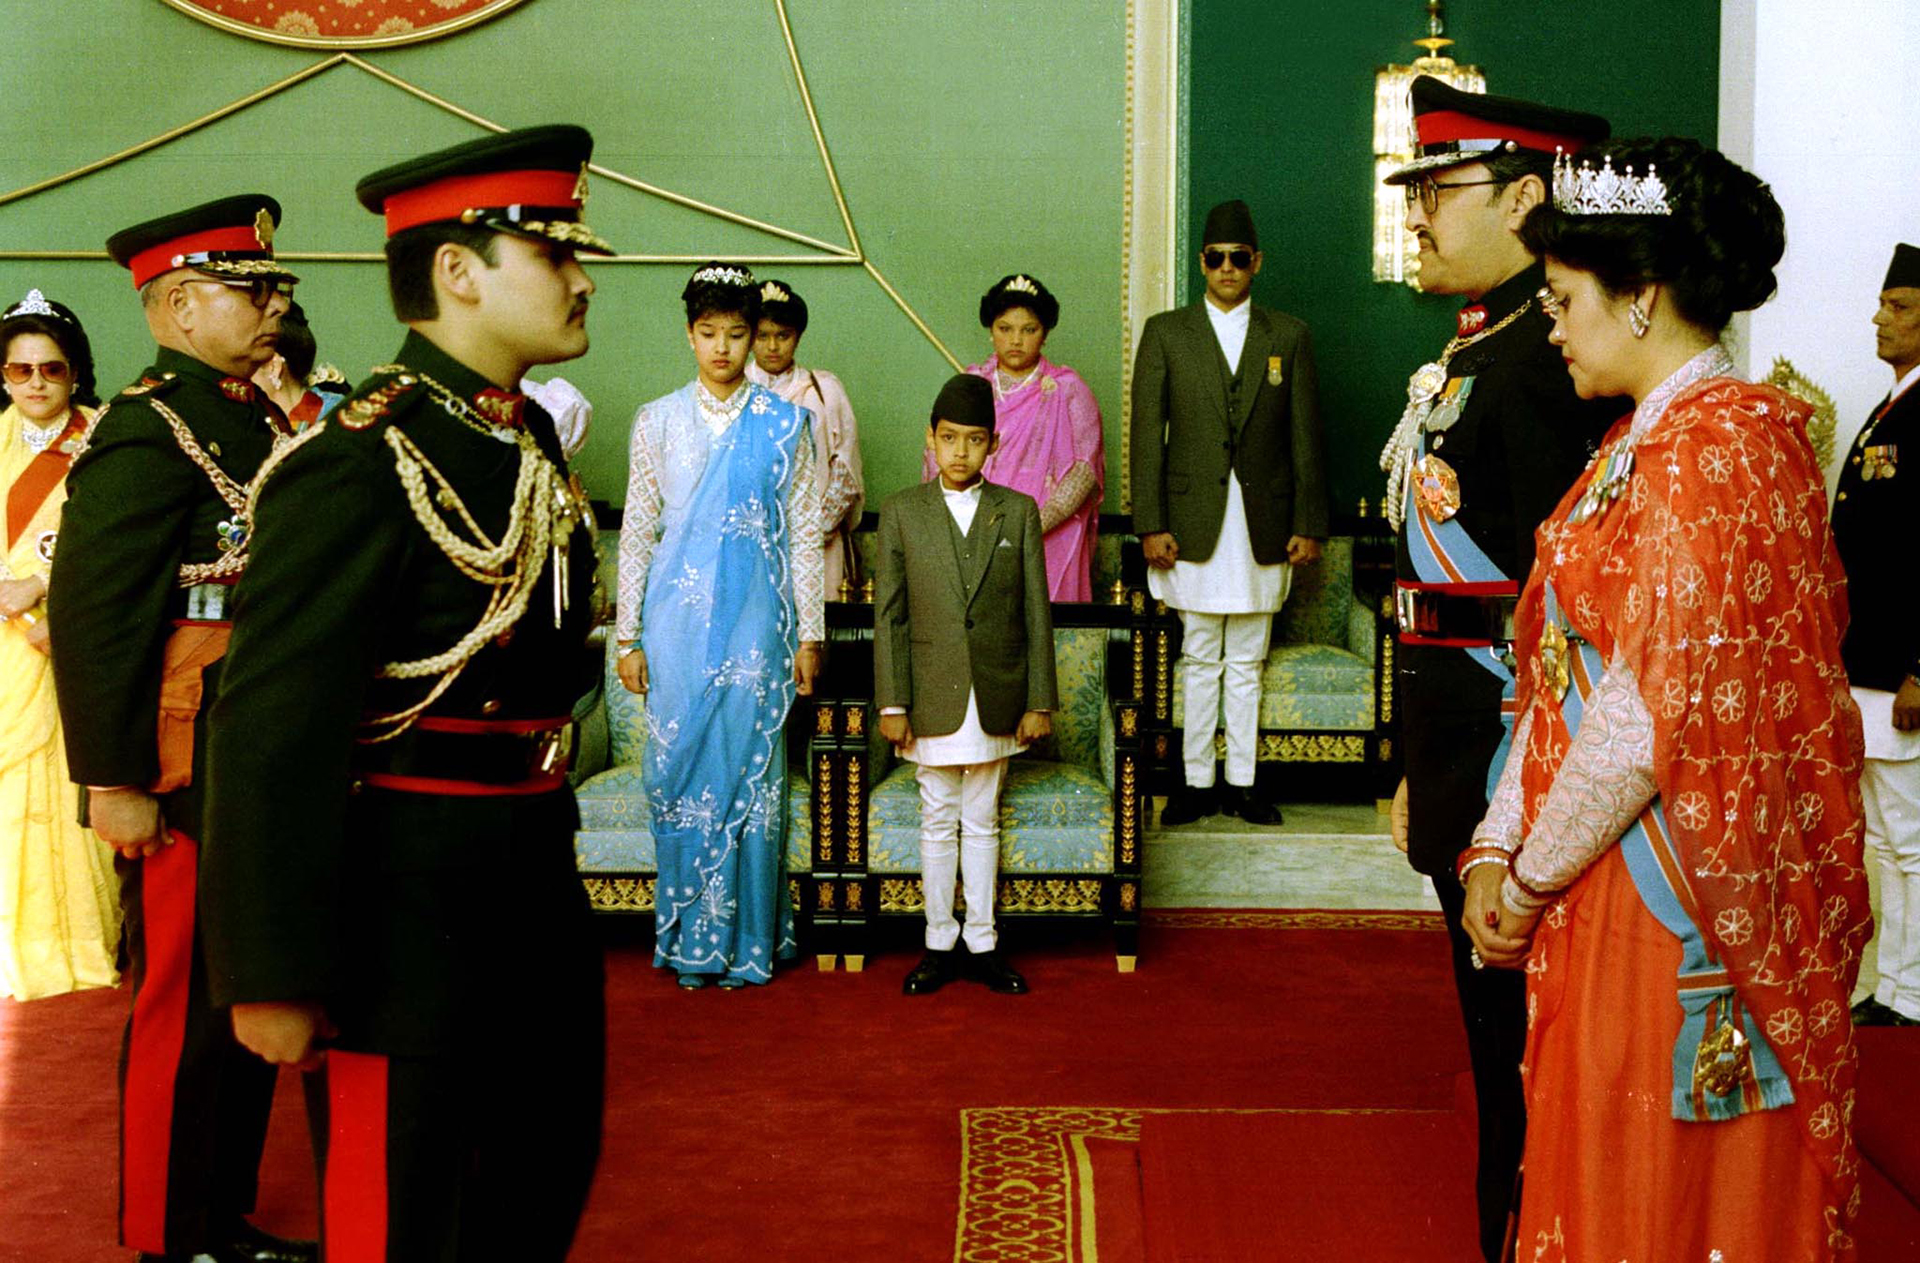 La masacre de la familia real de Nepal: un príncipe que mató a sus padres y fue coronado mientras agonizaba